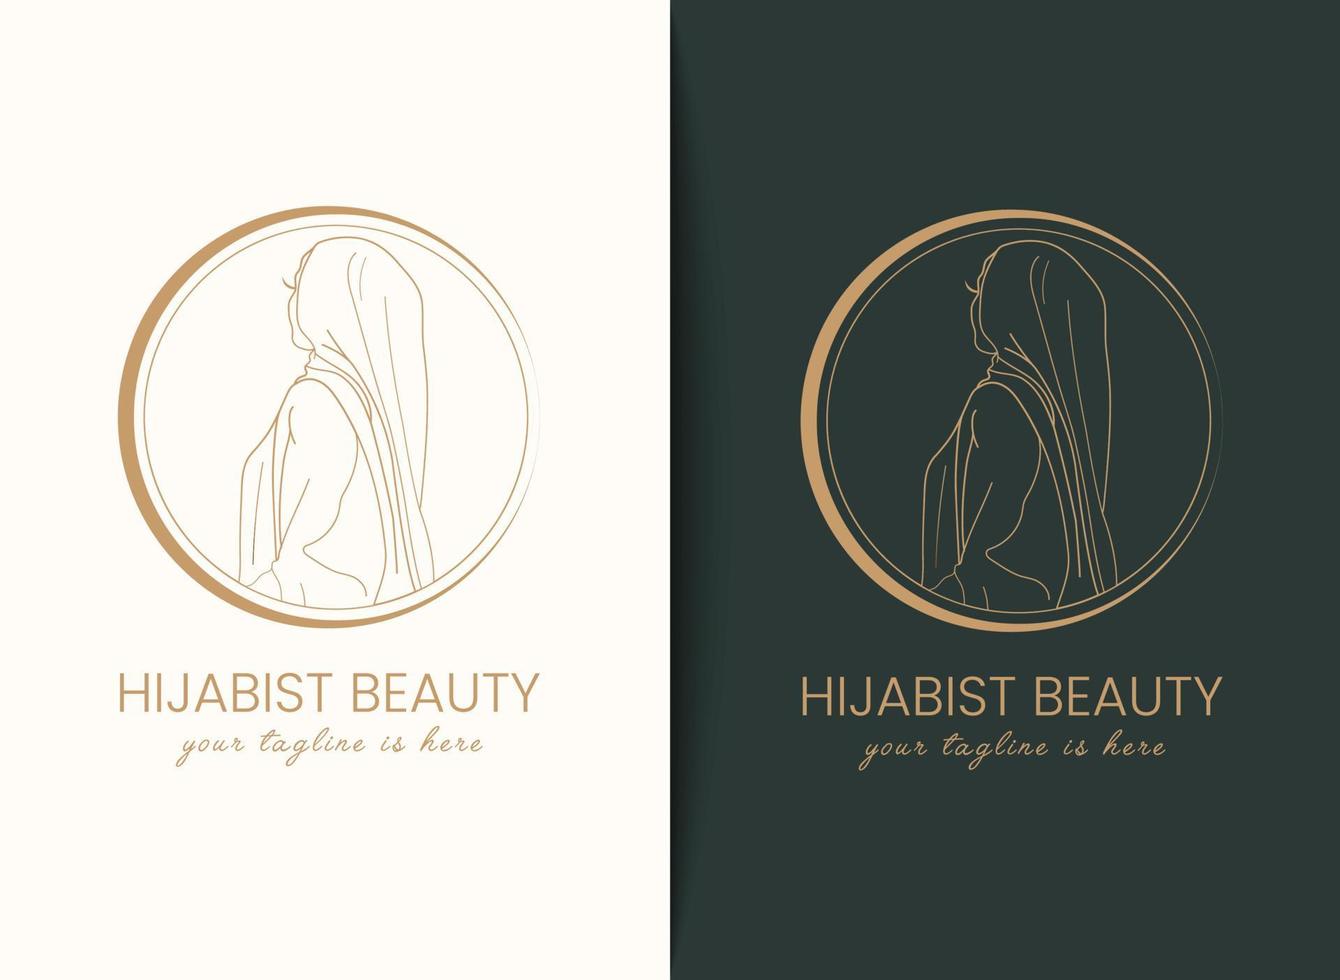 lineare kunst kreative einfache minimale muslimische frauen, die hijab-emblem-logo-vorlage für hijab-mode, bescheidene mode oder schönheit tragen vektor